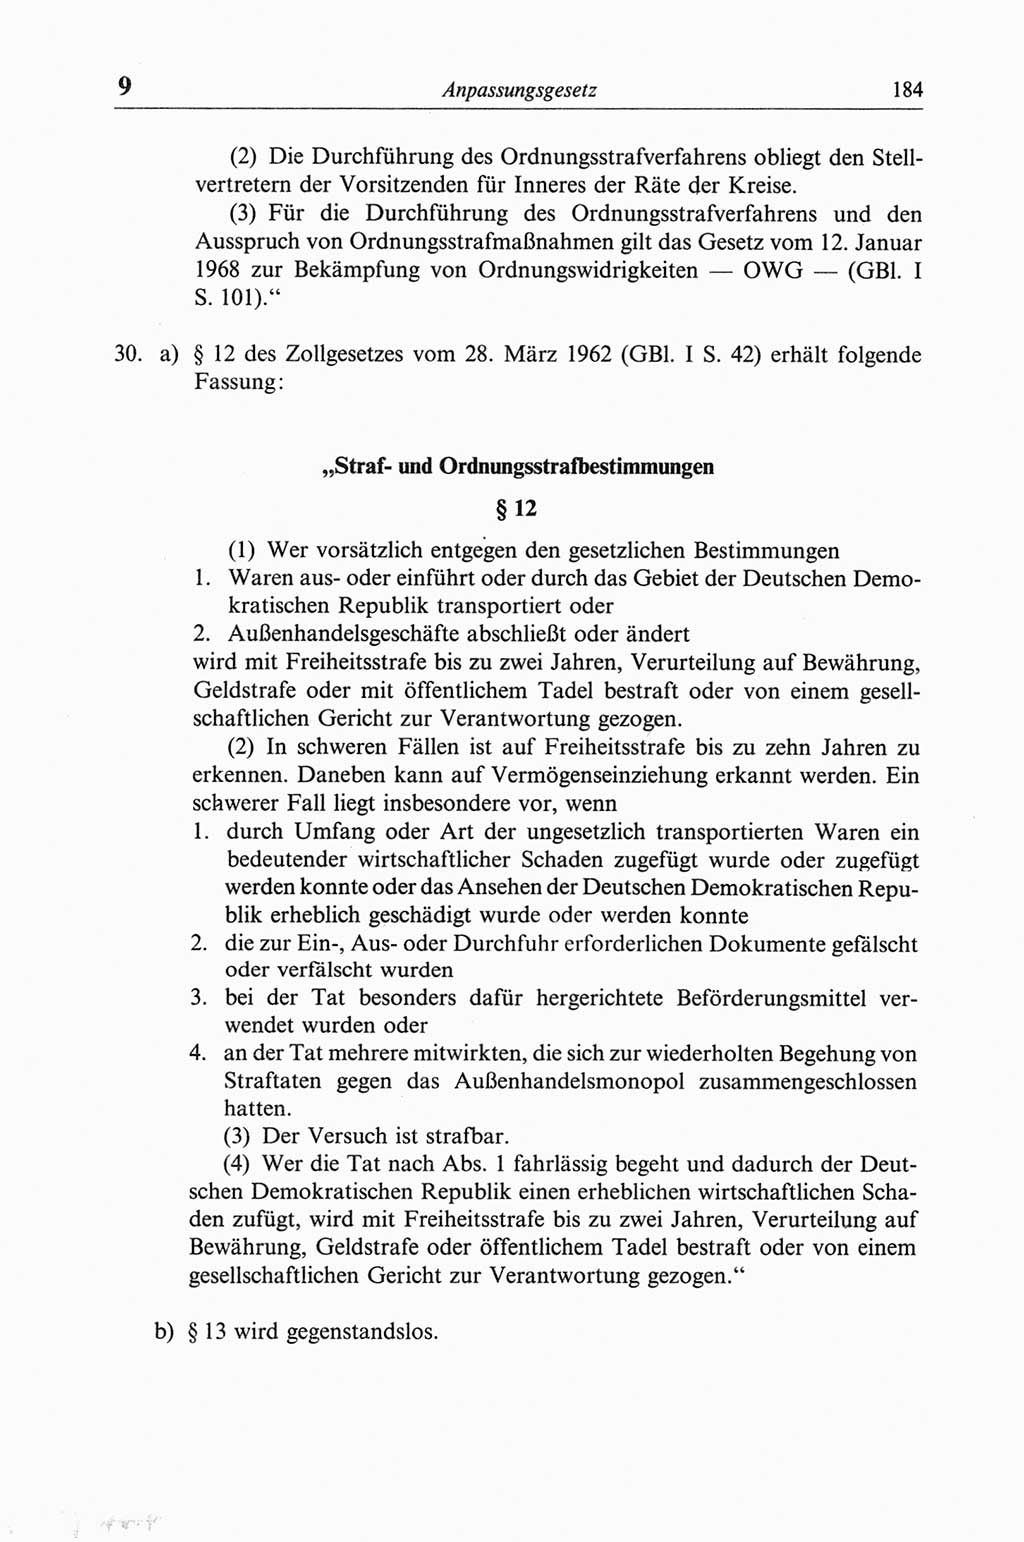 Strafgesetzbuch (StGB) der Deutschen Demokratischen Republik (DDR) und angrenzende Gesetze und Bestimmungen 1968, Seite 184 (StGB Ges. Best. DDR 1968, S. 184)